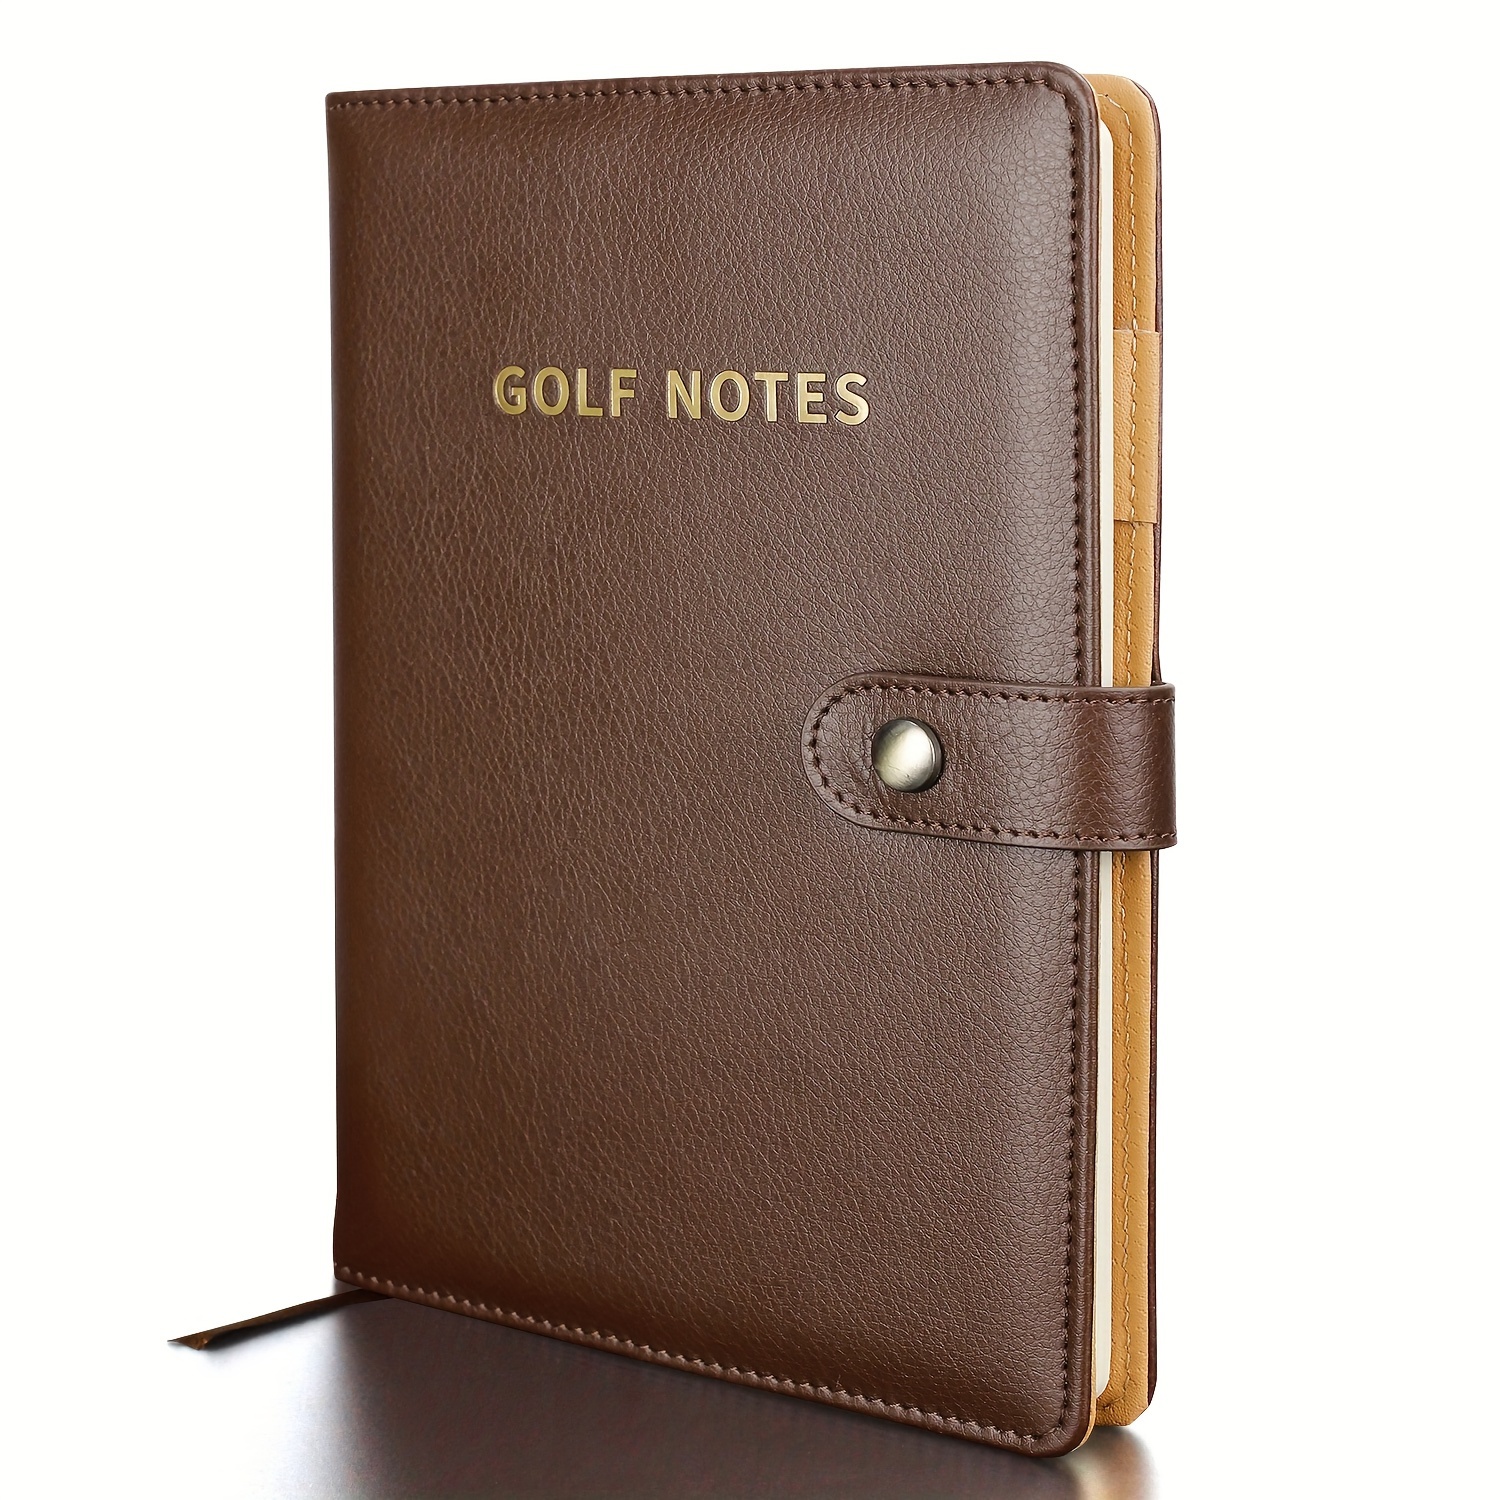 

1pc Golf Scorecard Book, Pu Leather Golf Journal Golf Notebook, Golf Log Book, Golf Score Book - 200 Pages, Golf Gifts For Men Women